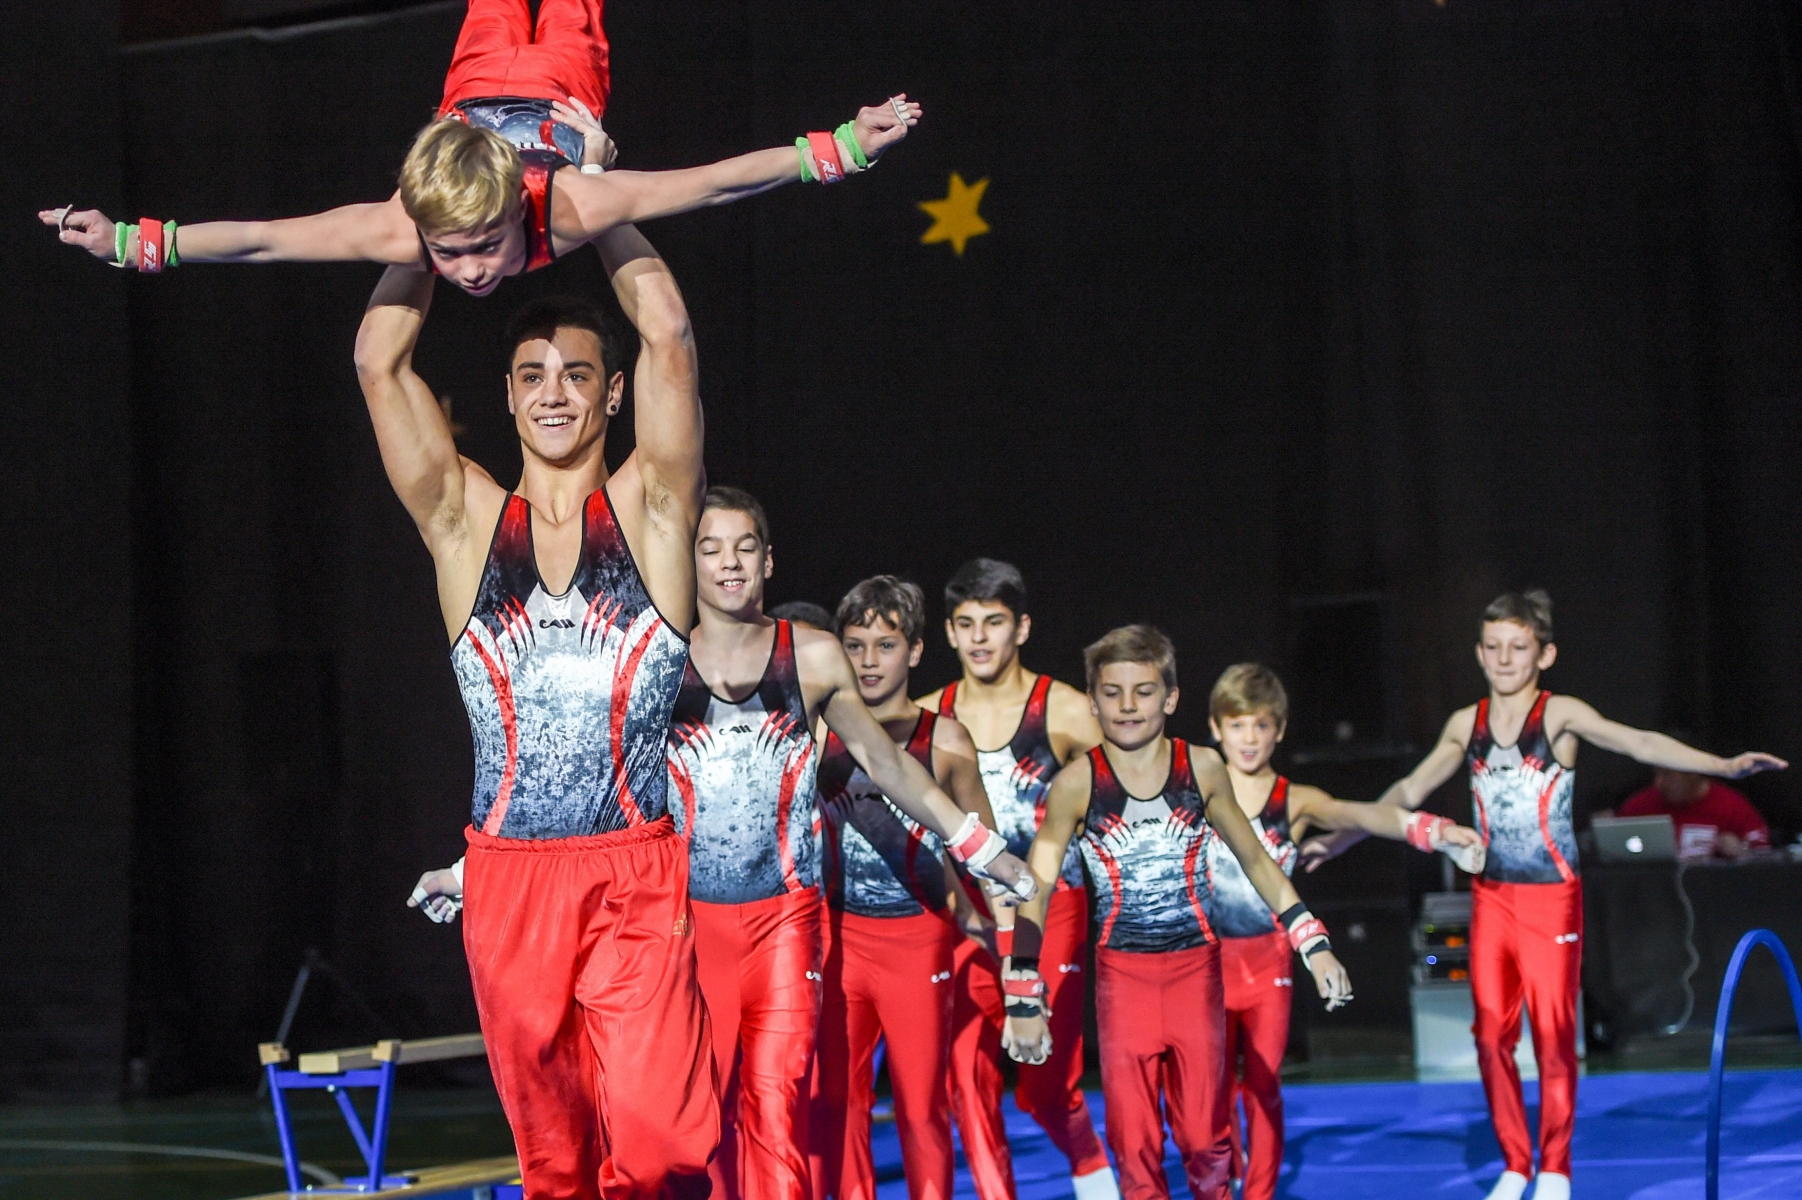 Gala de la societe de gymnastique de Serrieres 

Neuchatel, le 21 novembre 2015
Photo: Christian Galley



 SOCIETE DE GYMNASTIQUE DE SERRIERES